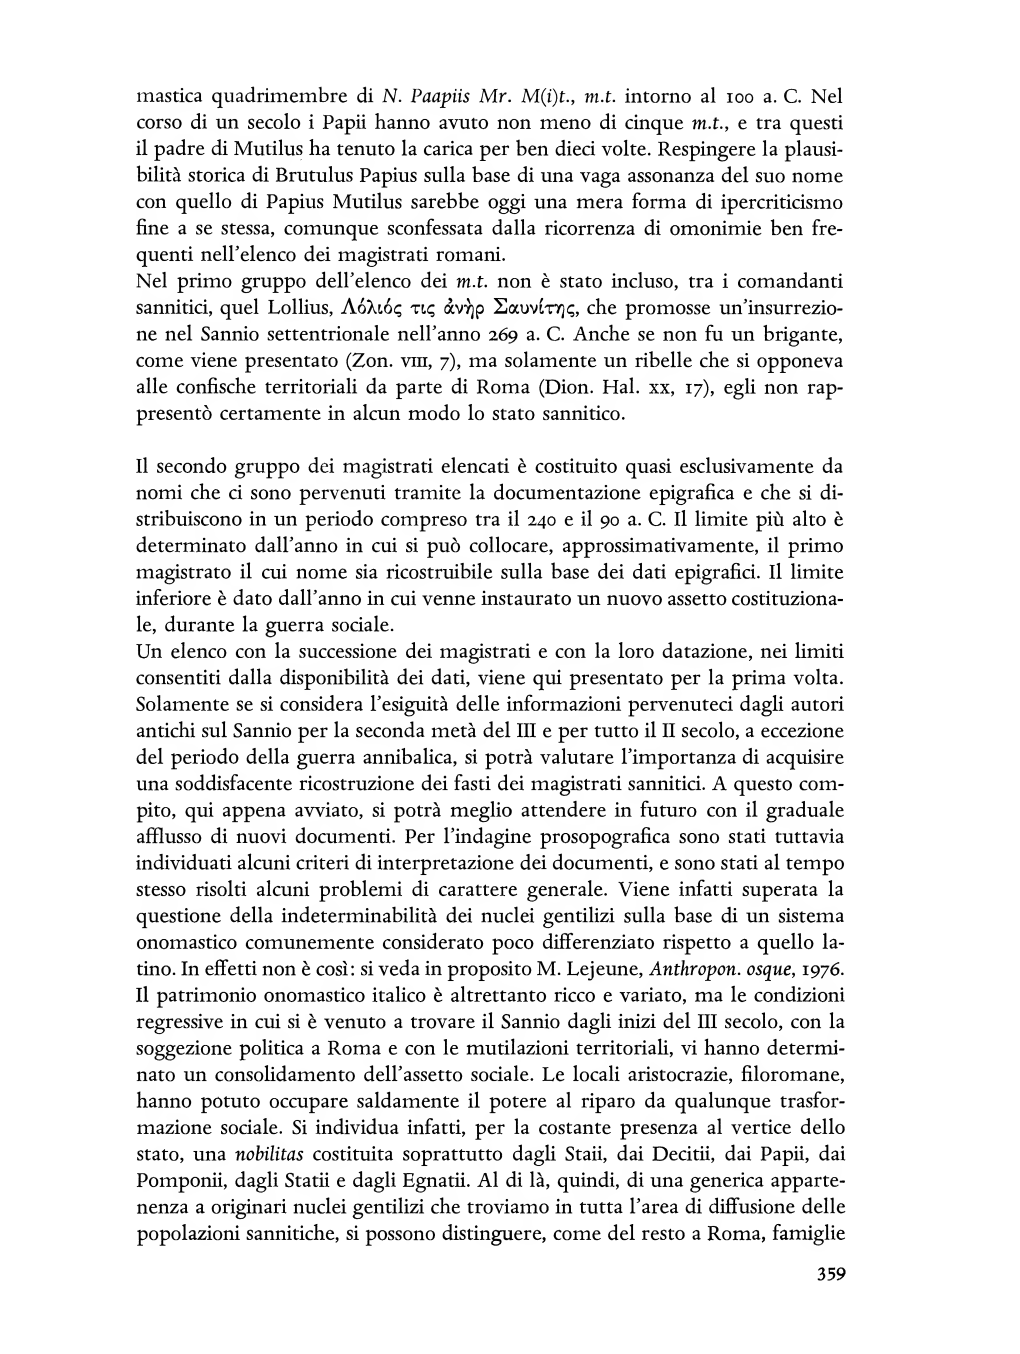 Adriano La Regina, I Sanniti, in "Italia. Omnium Terrarum Parens"